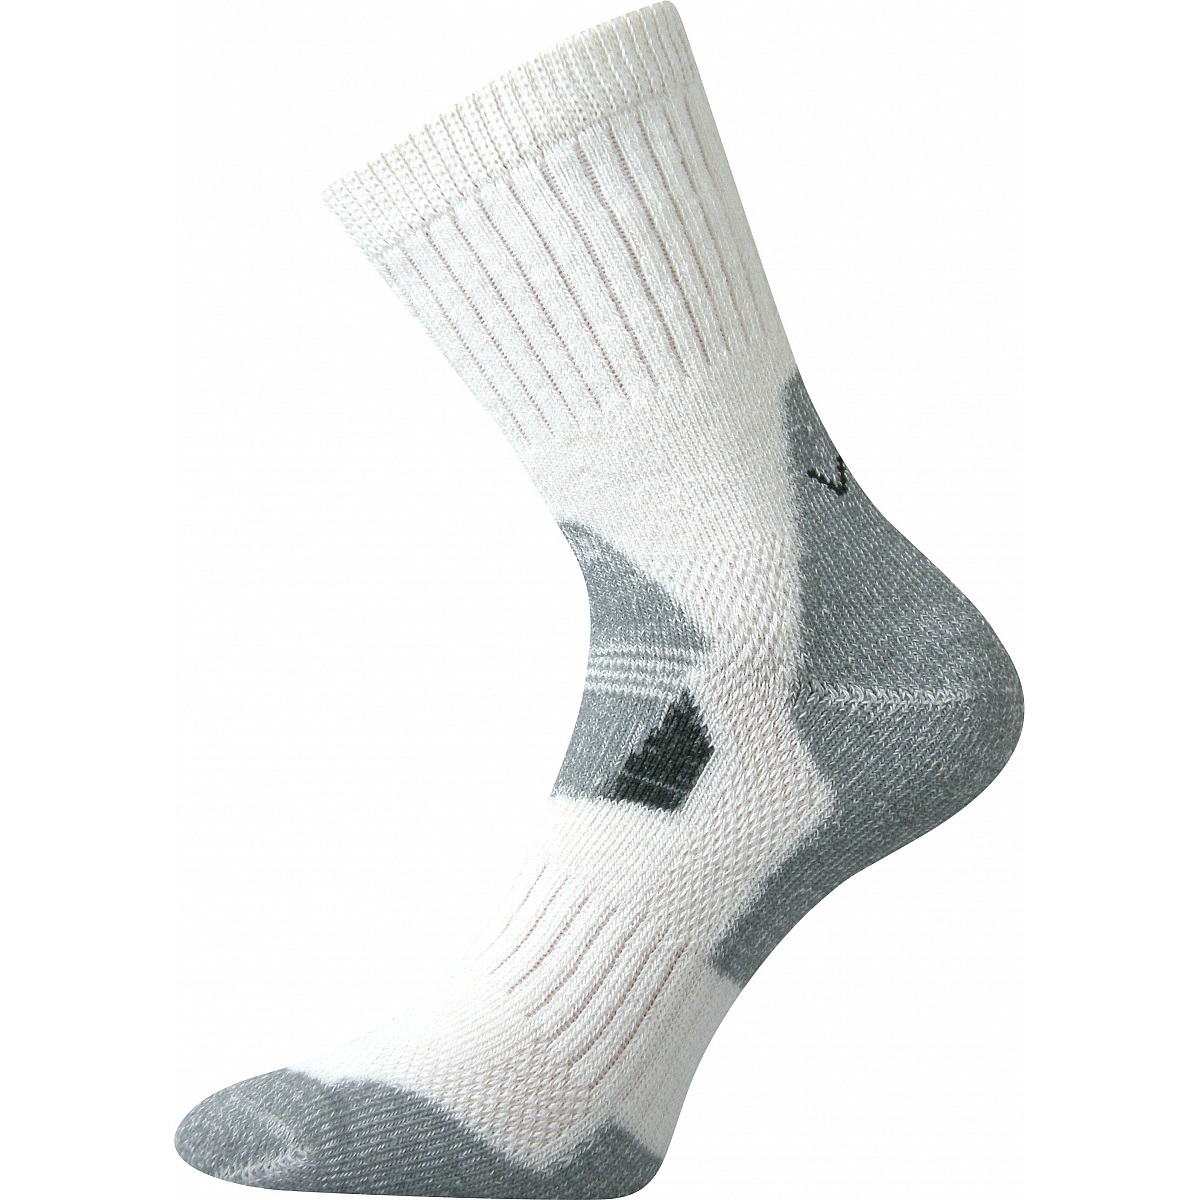 Extra teplé vlněné ponožky Voxx Stabil - bílé-šedé, 35-38